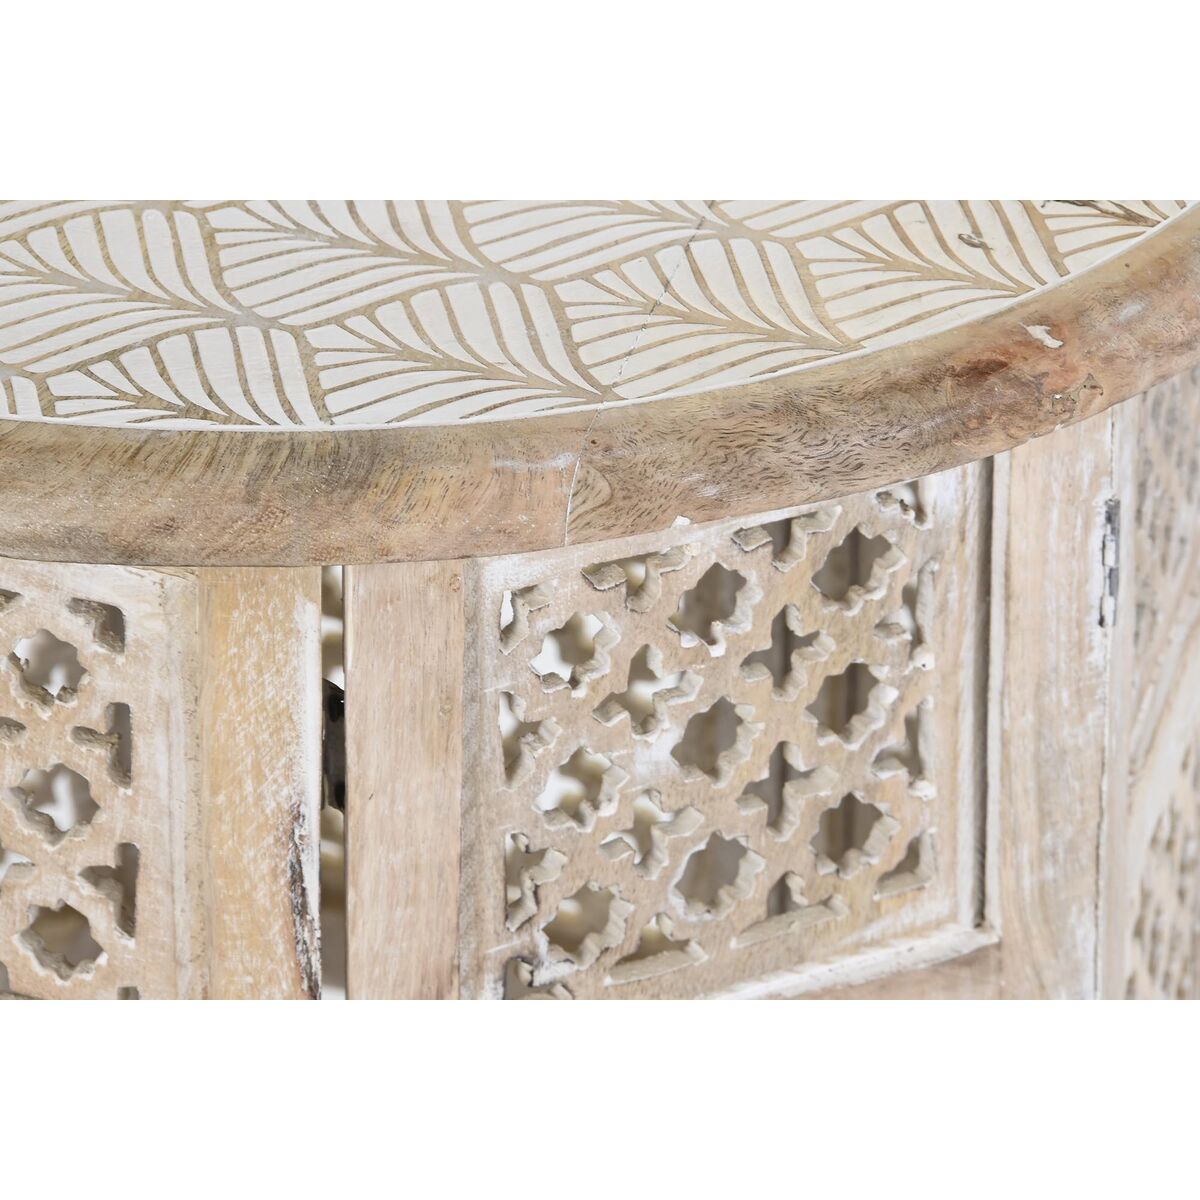 Table d'appoint Design Oriental Home Decor Bois de manguier Marron et Blanc - Ajoutez une touche d'élégance florale à votre intérieur